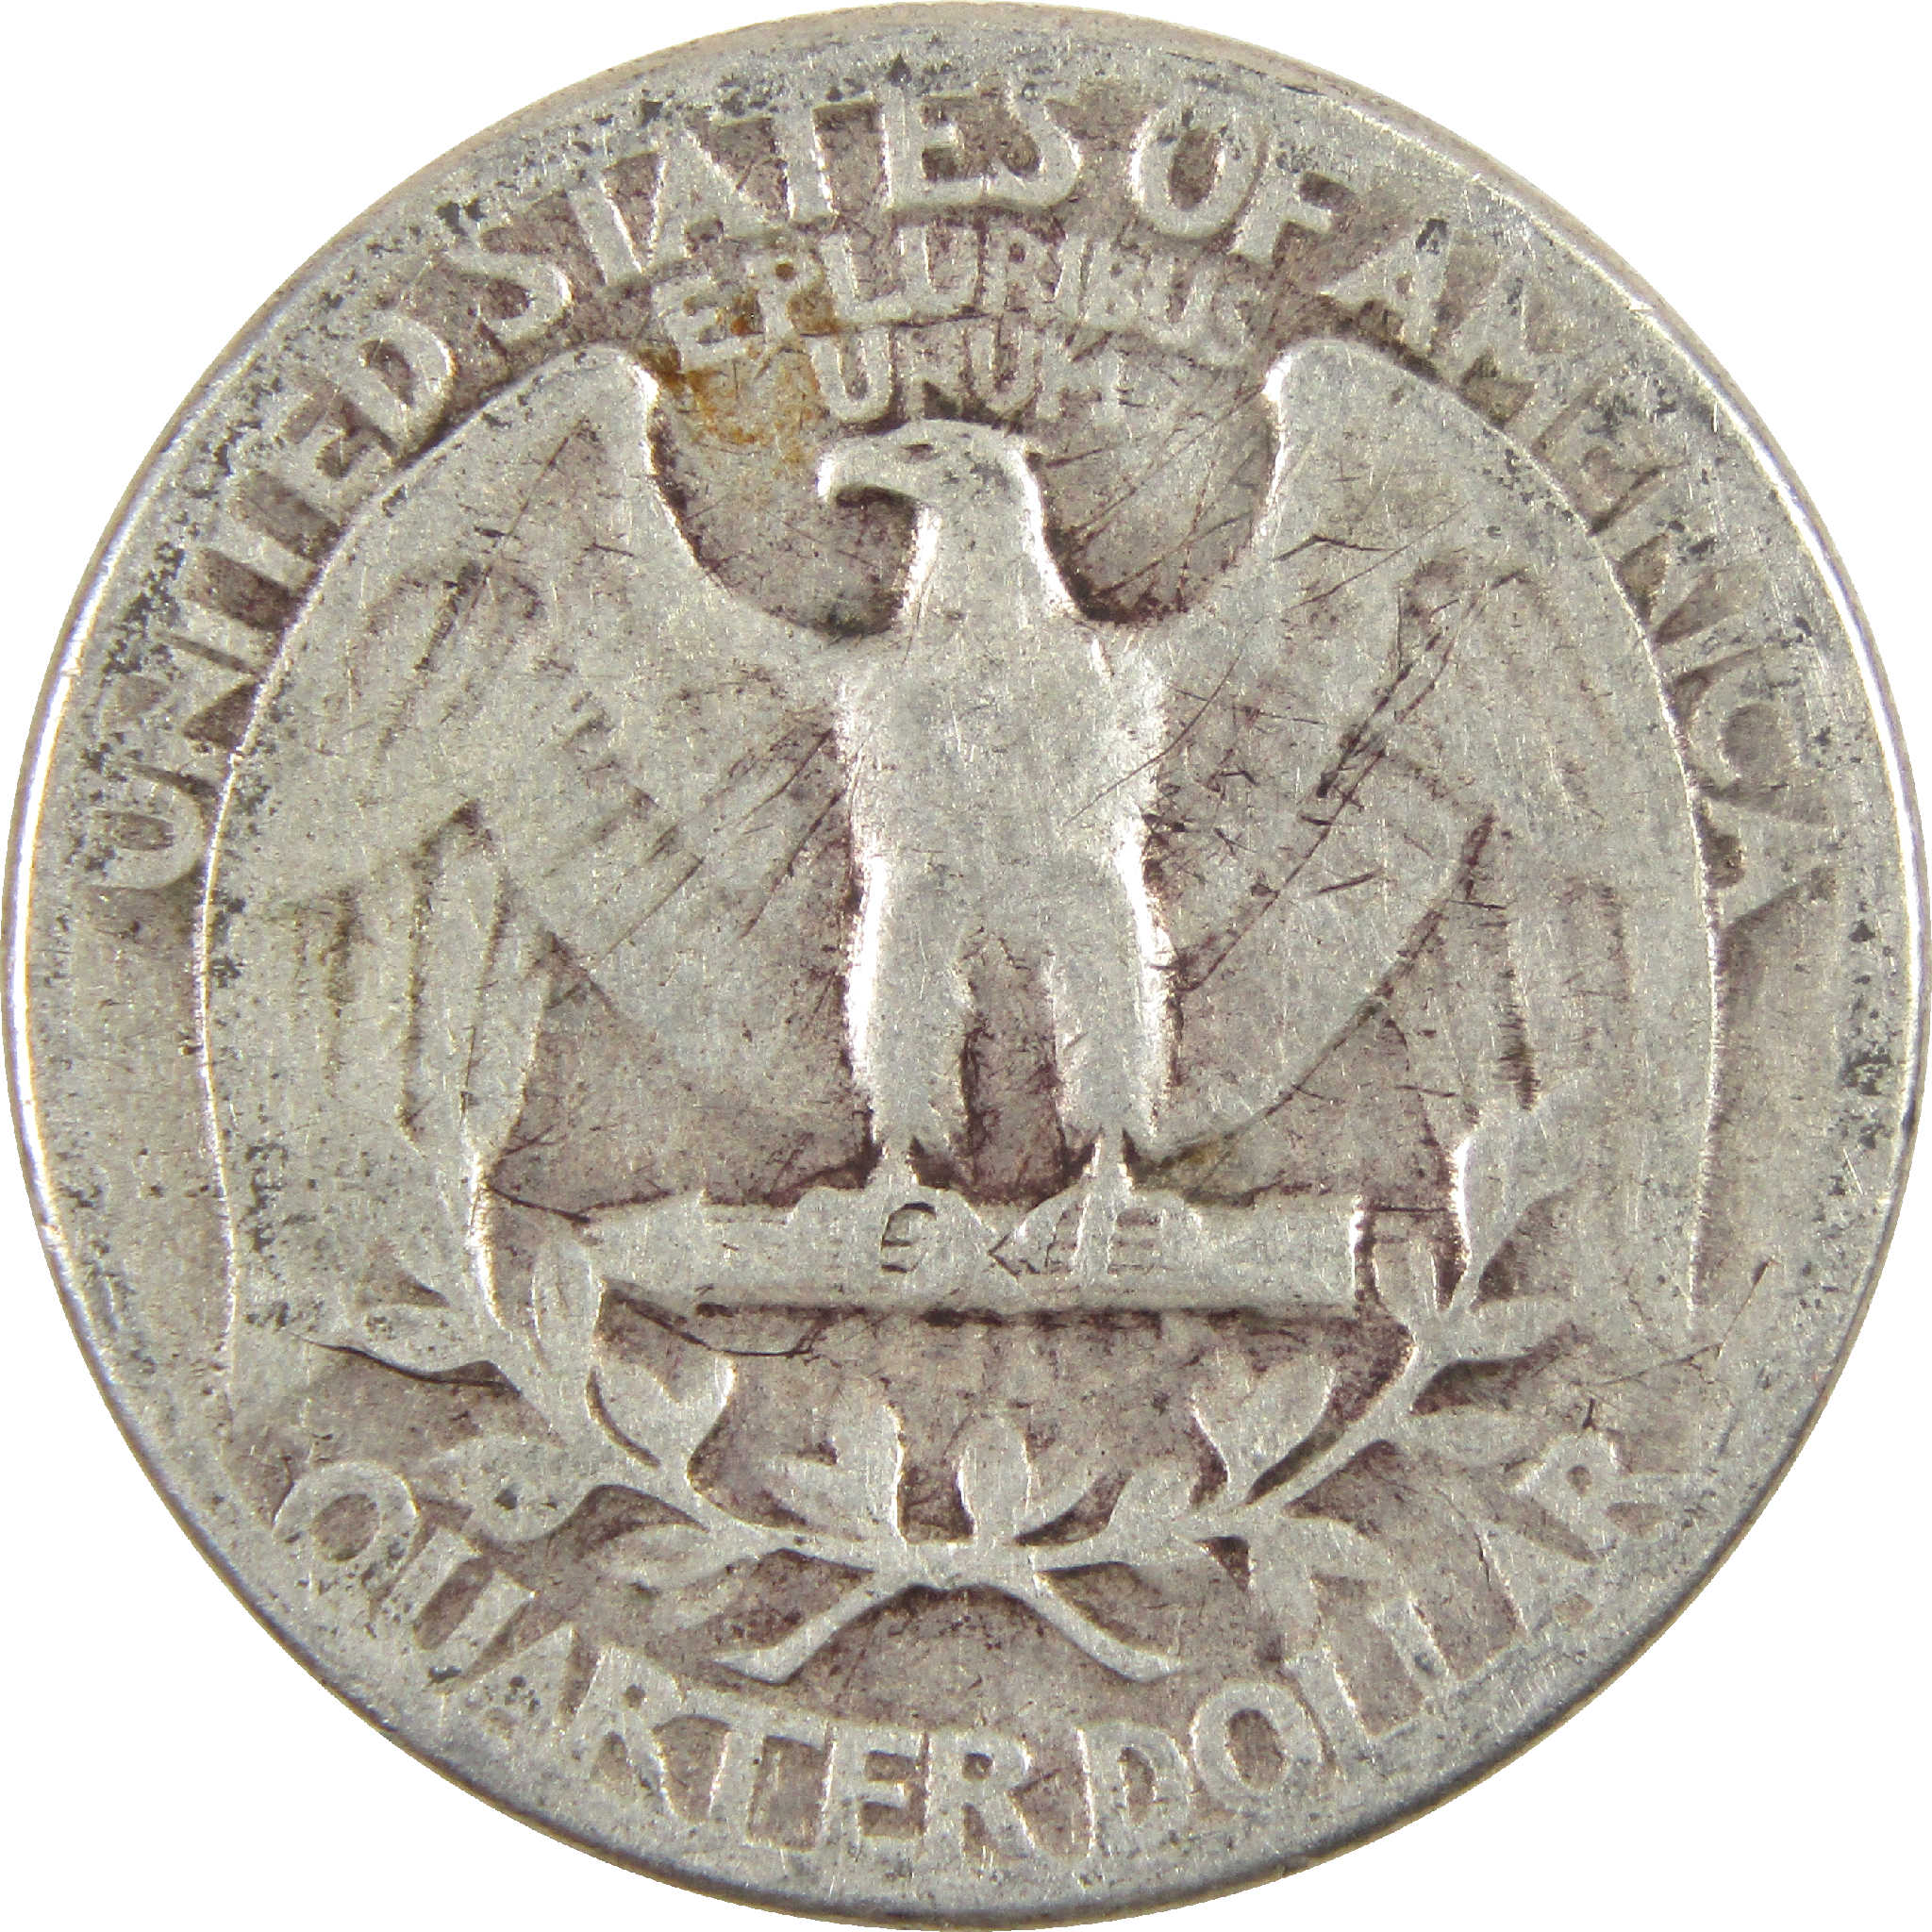 1934 Medium Motto Washington Quarter VG Very Good Silver 25c Coin